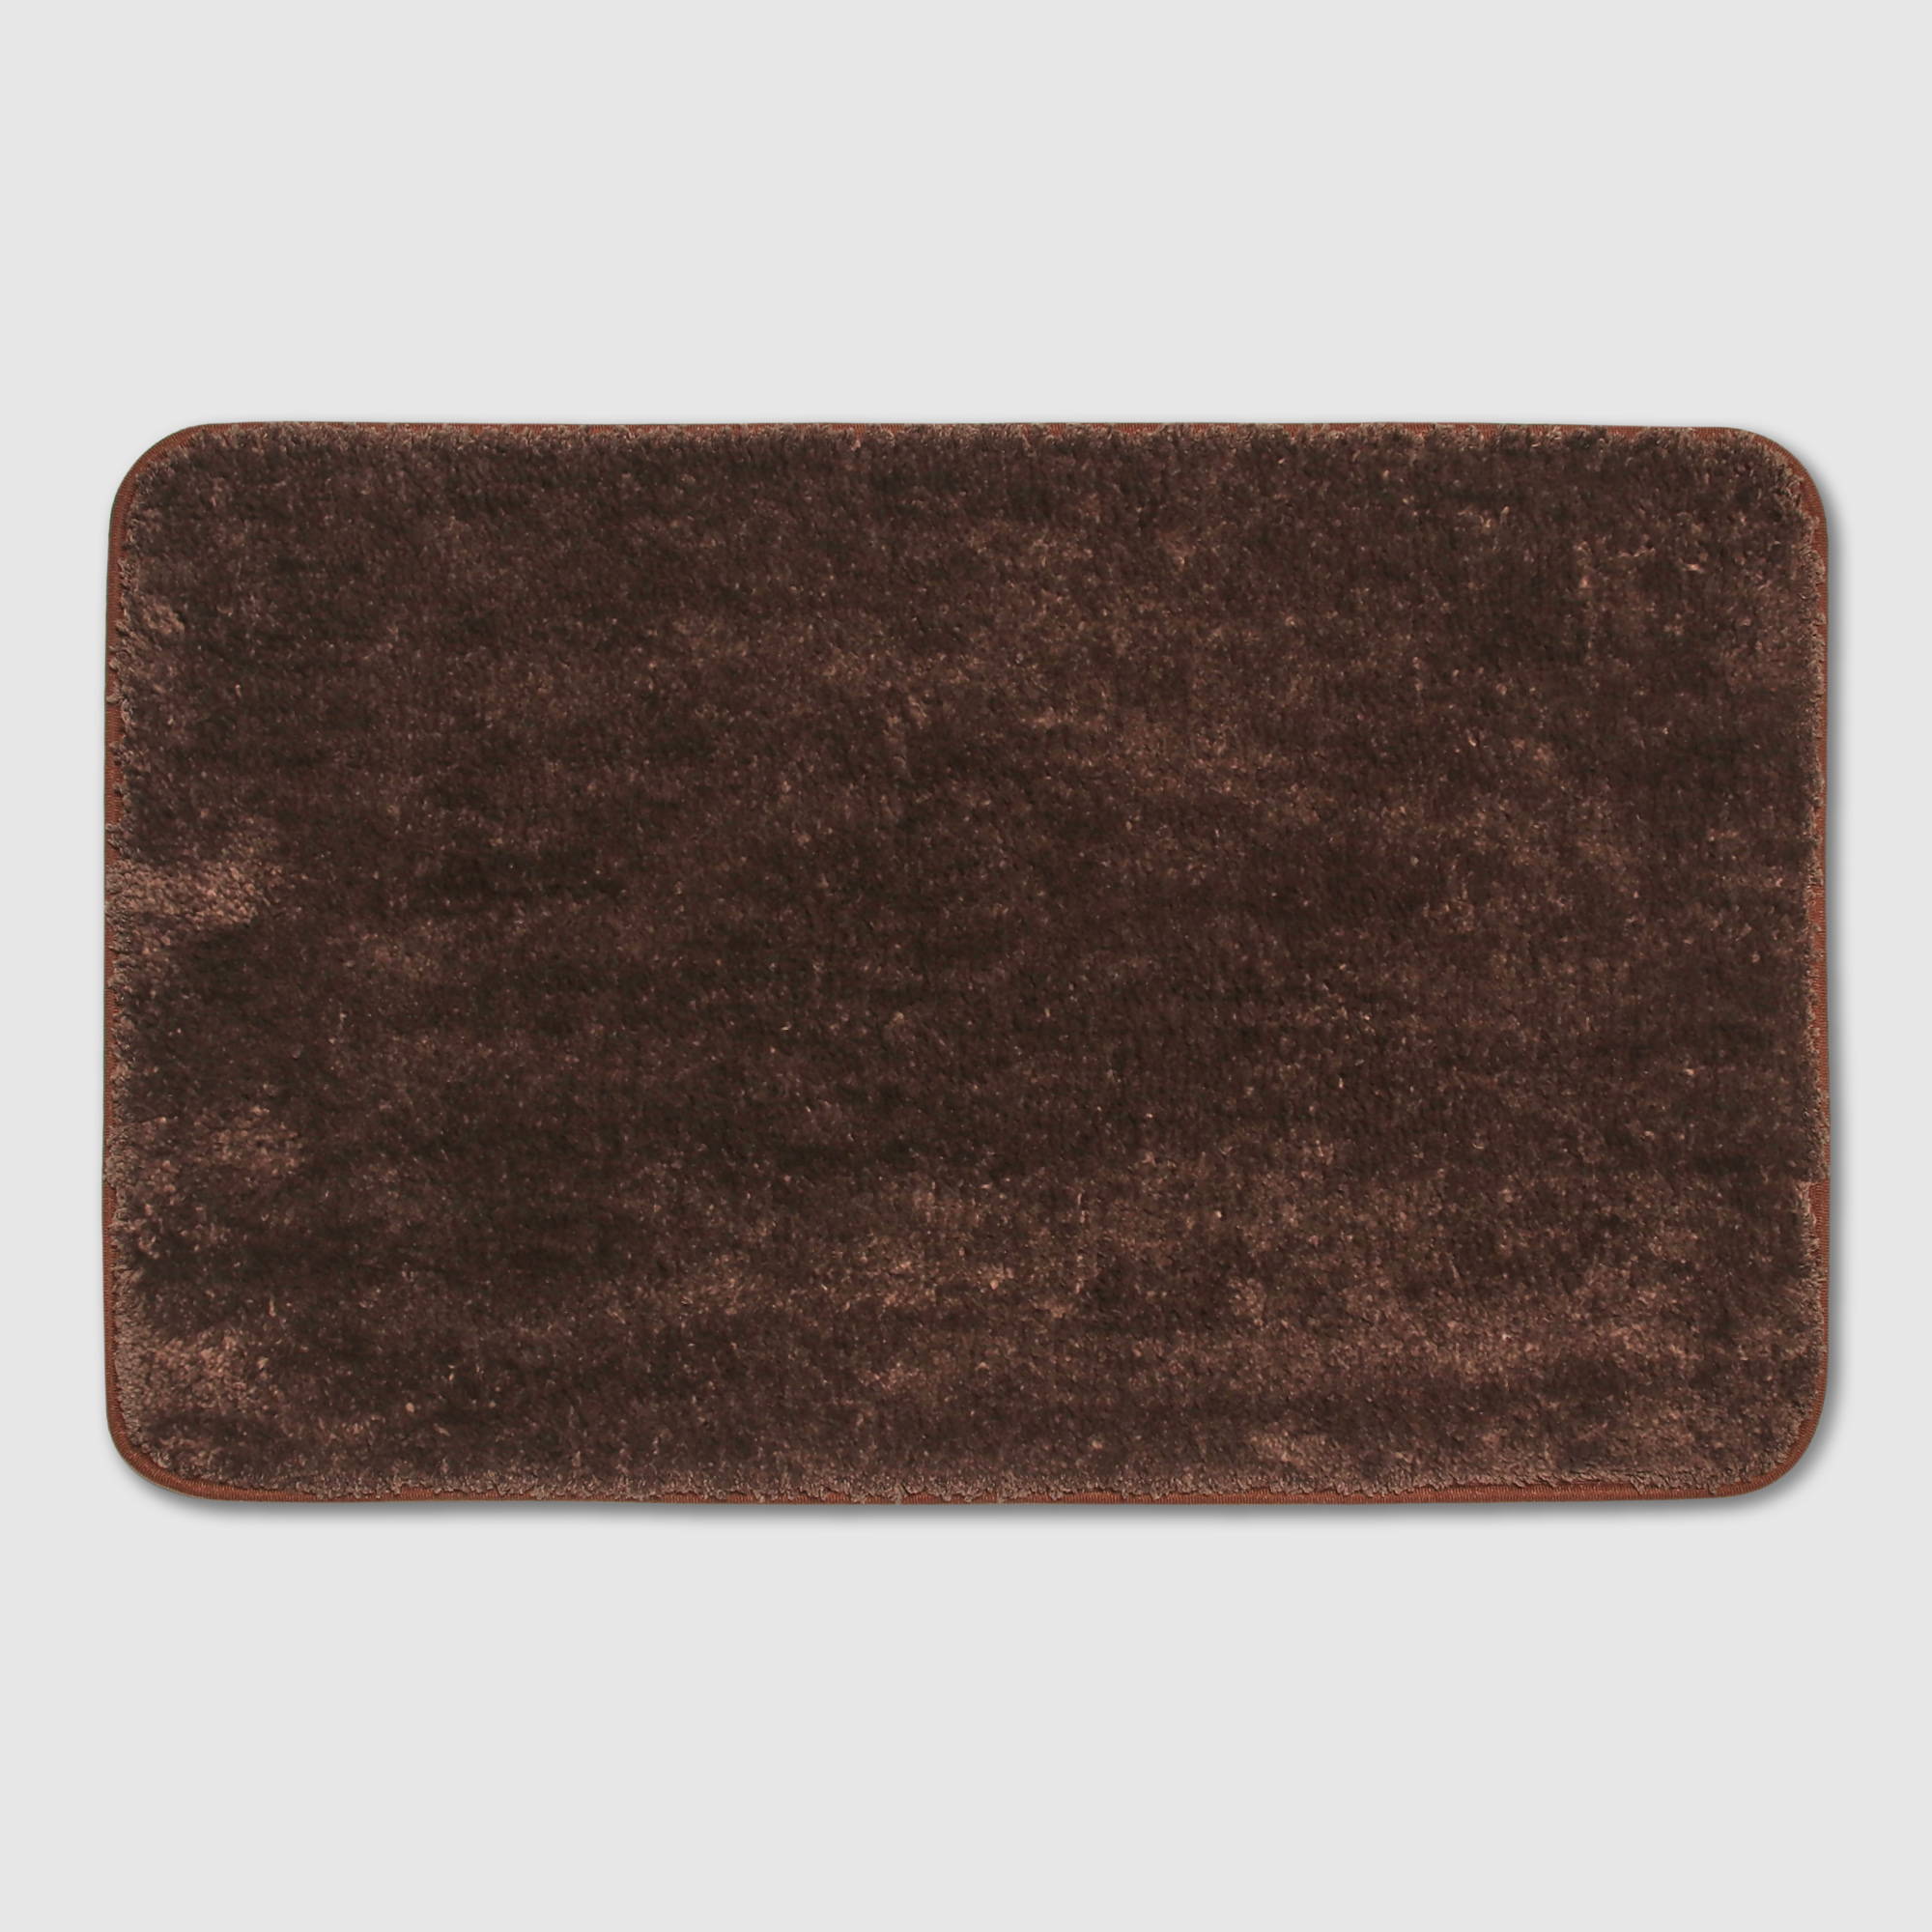 фото Коврик silverstone carpet коричневый 50х80 см